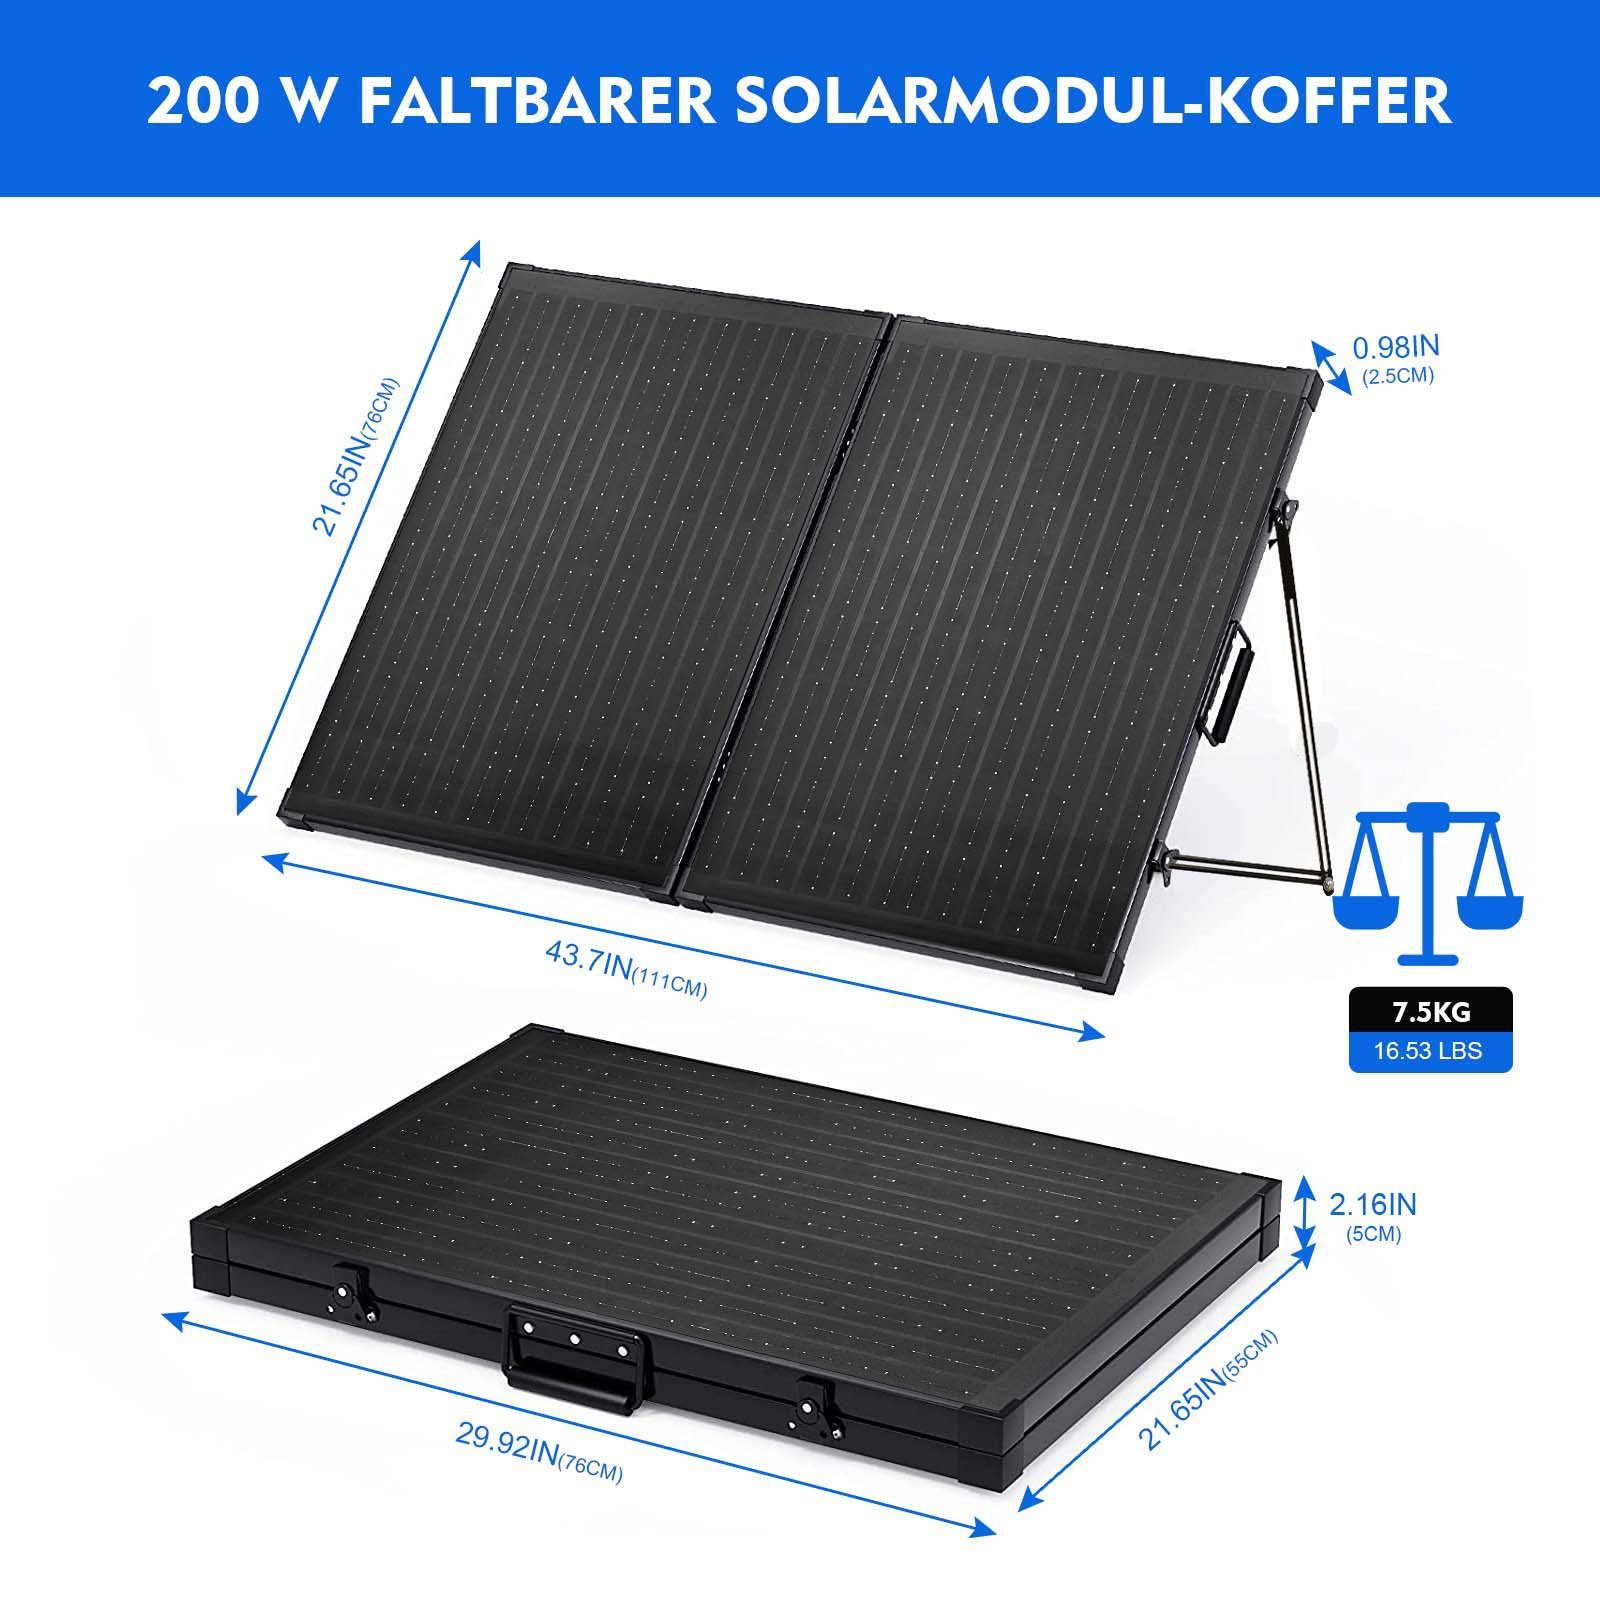 verstellbarer Photovoltaik-Panel Solaranlage PFCTART mit faltbares 200W Halterung